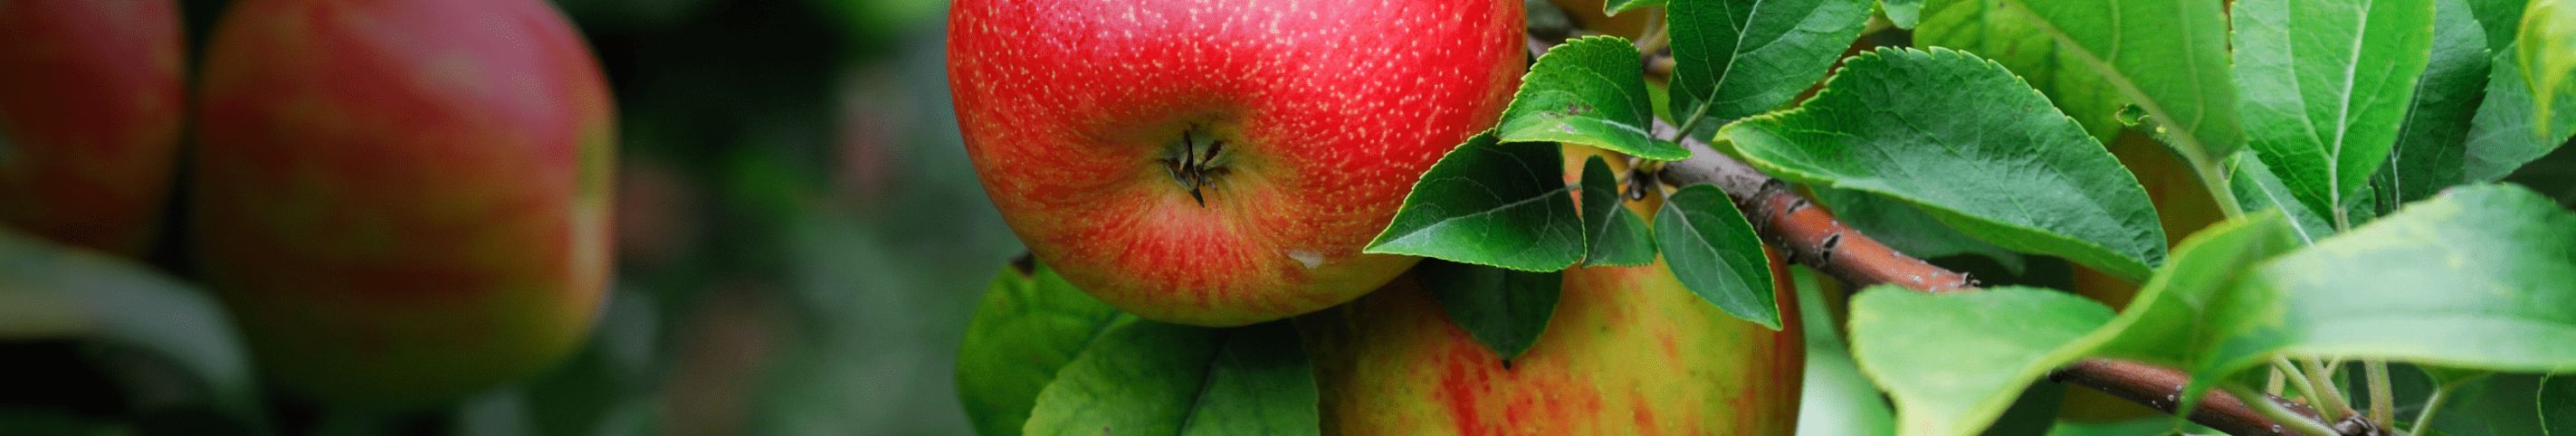 Bio-Apfelbaum 'Alkmene' Herbstapfel kaufen - Plantura Shop